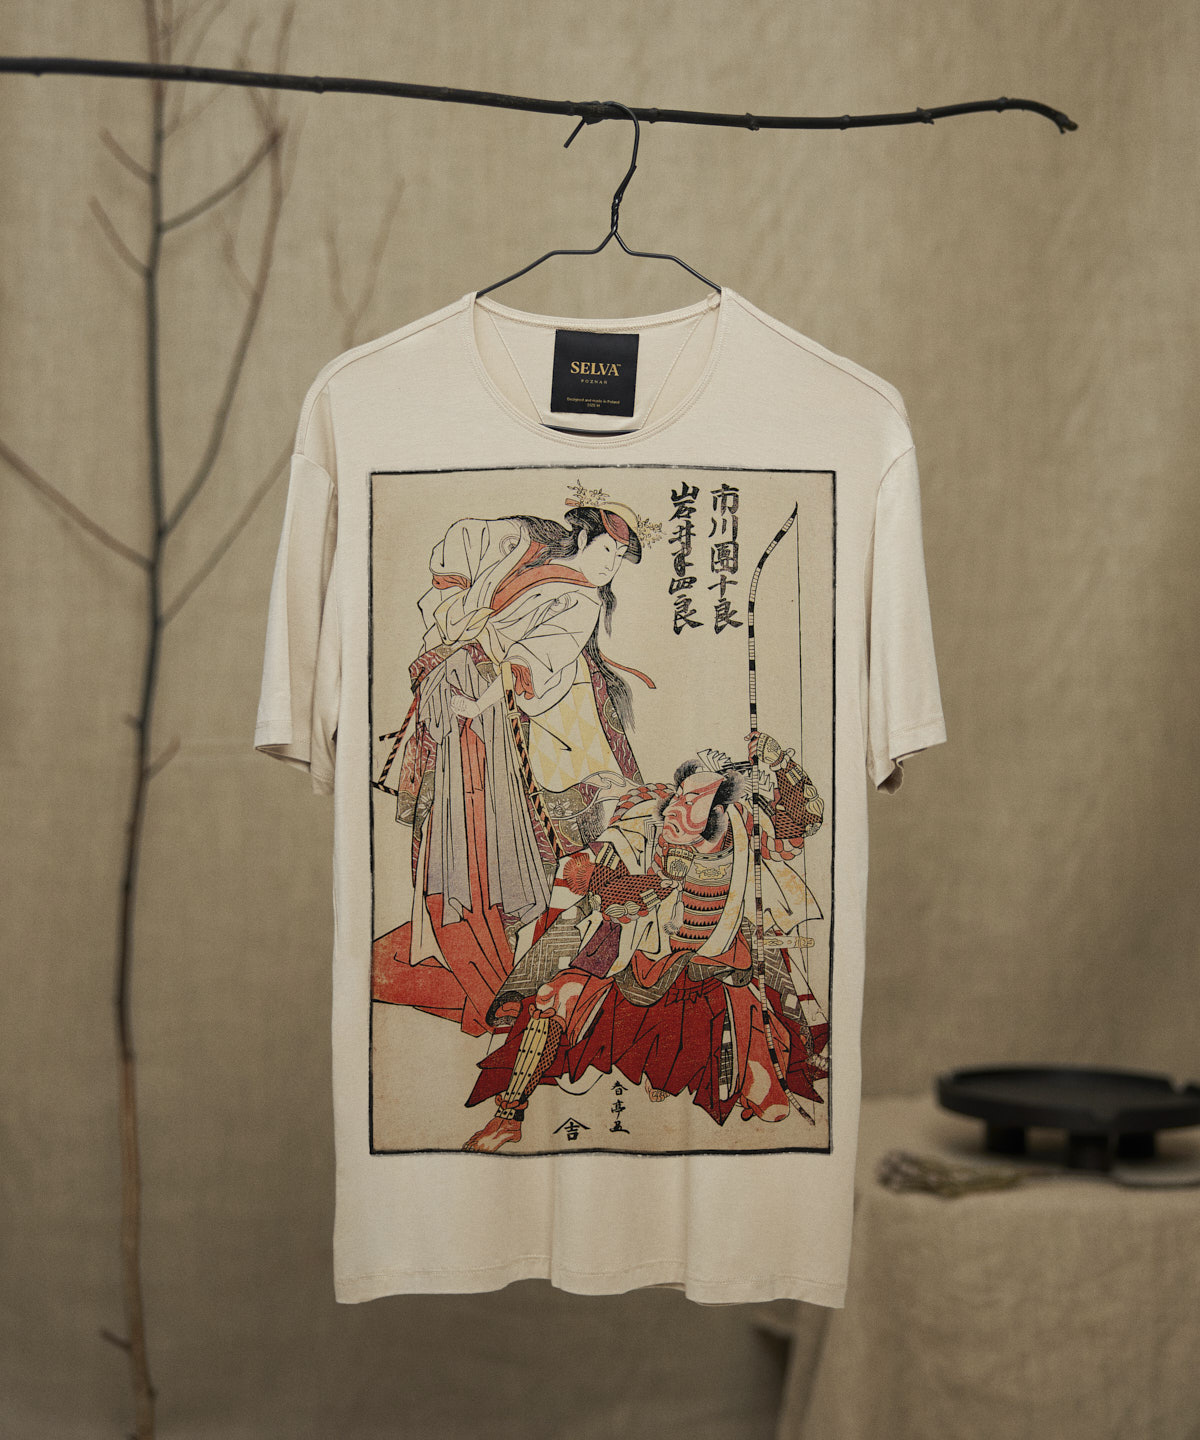 Katsukawa Shuntei no.54 hummus t-shirt man